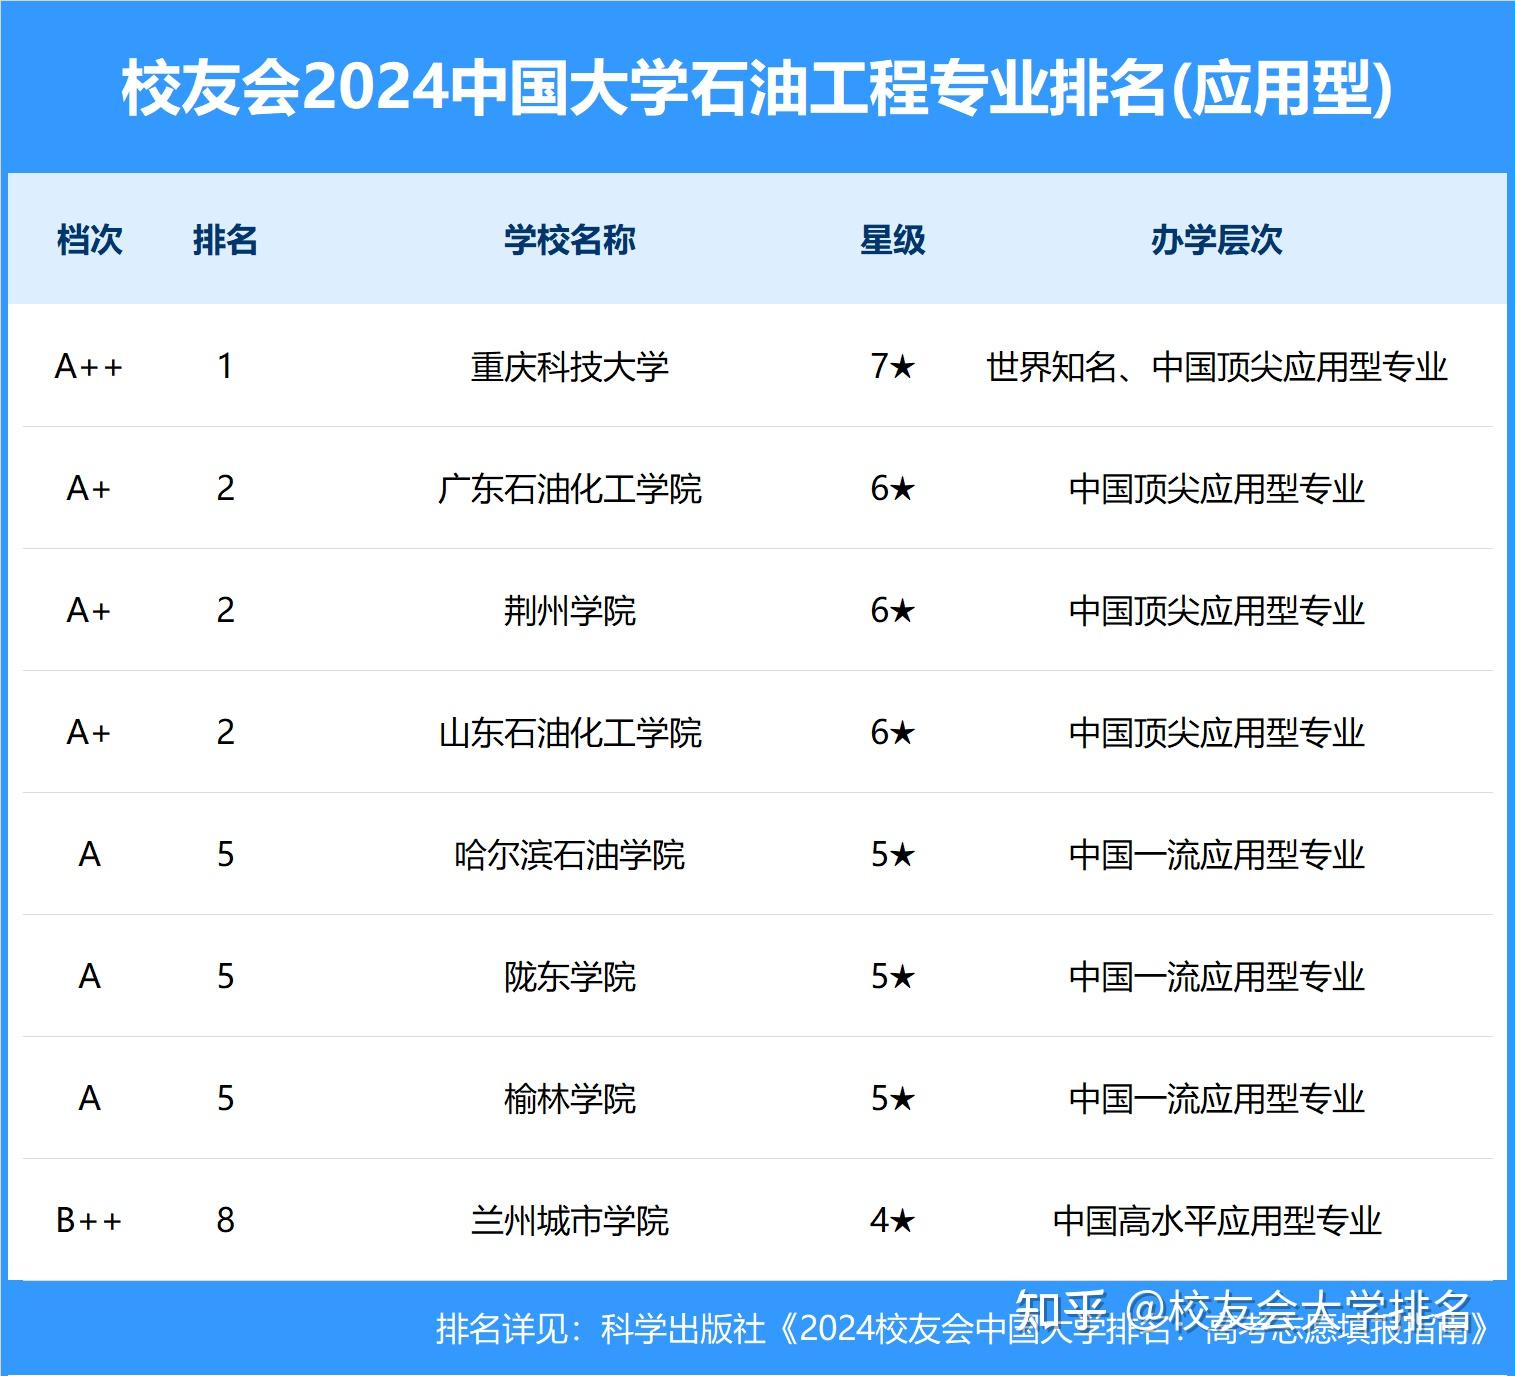 校友会2024中国大学石油工程专业排名,中国石油大学(北京)第一